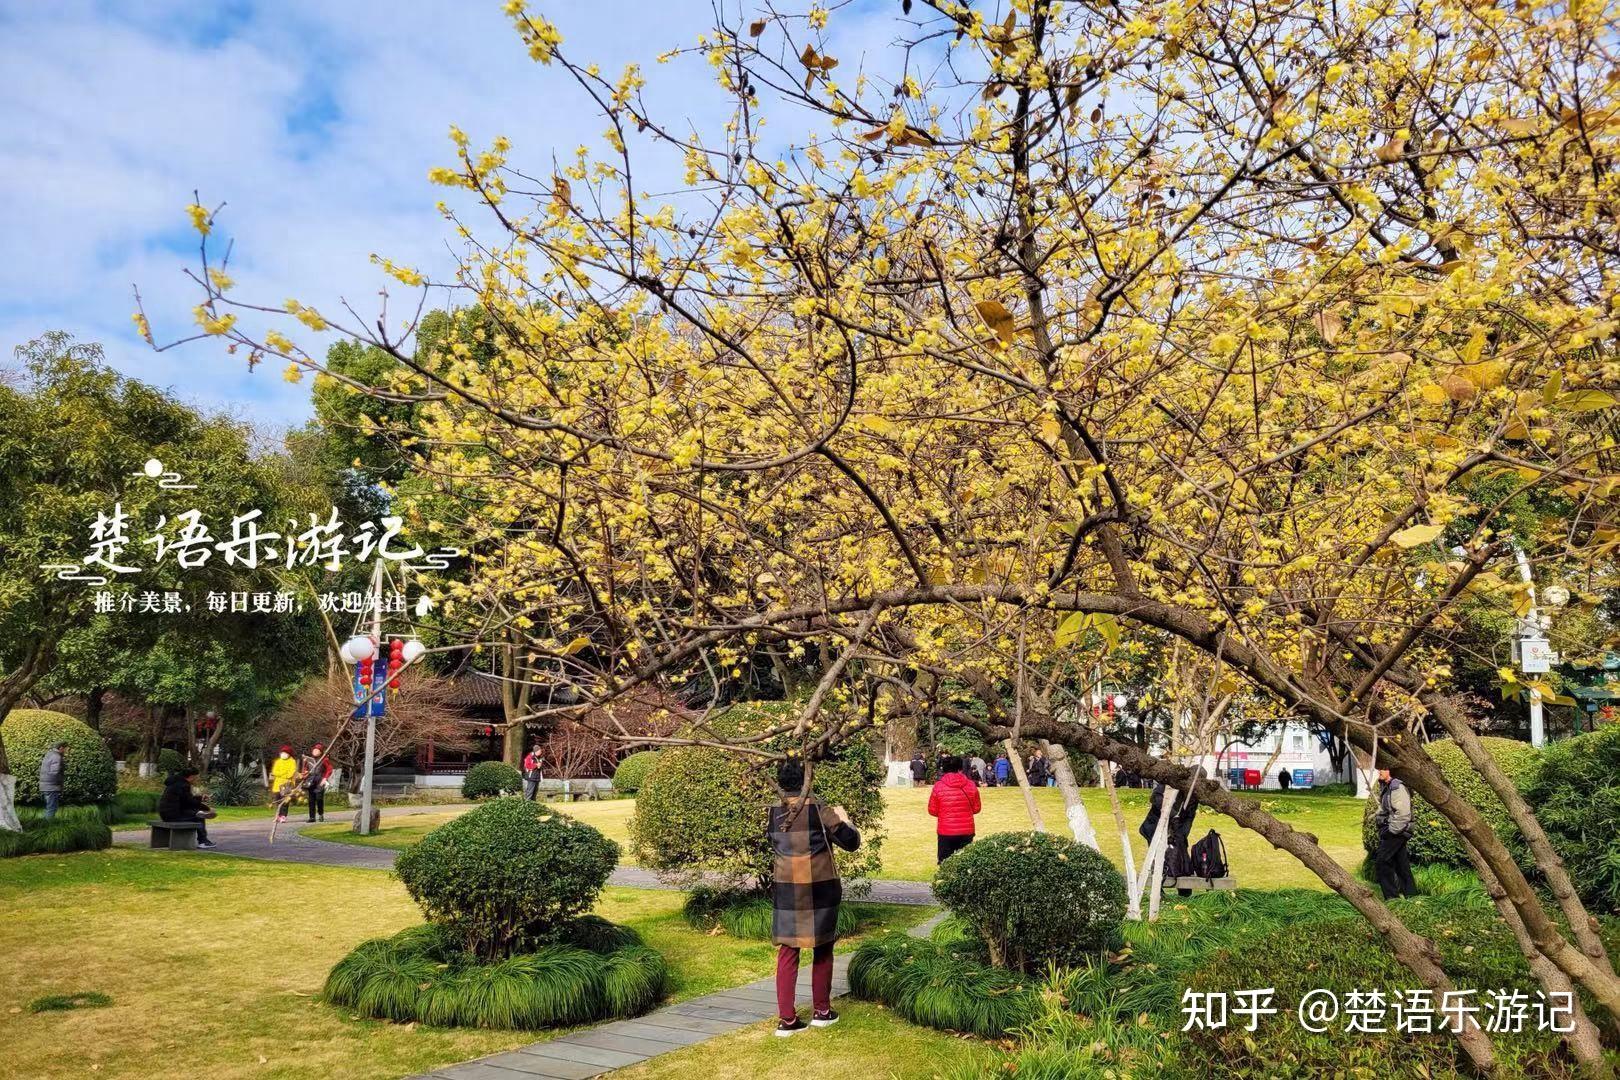 中山公园立体花坛花团锦簇格外美丽